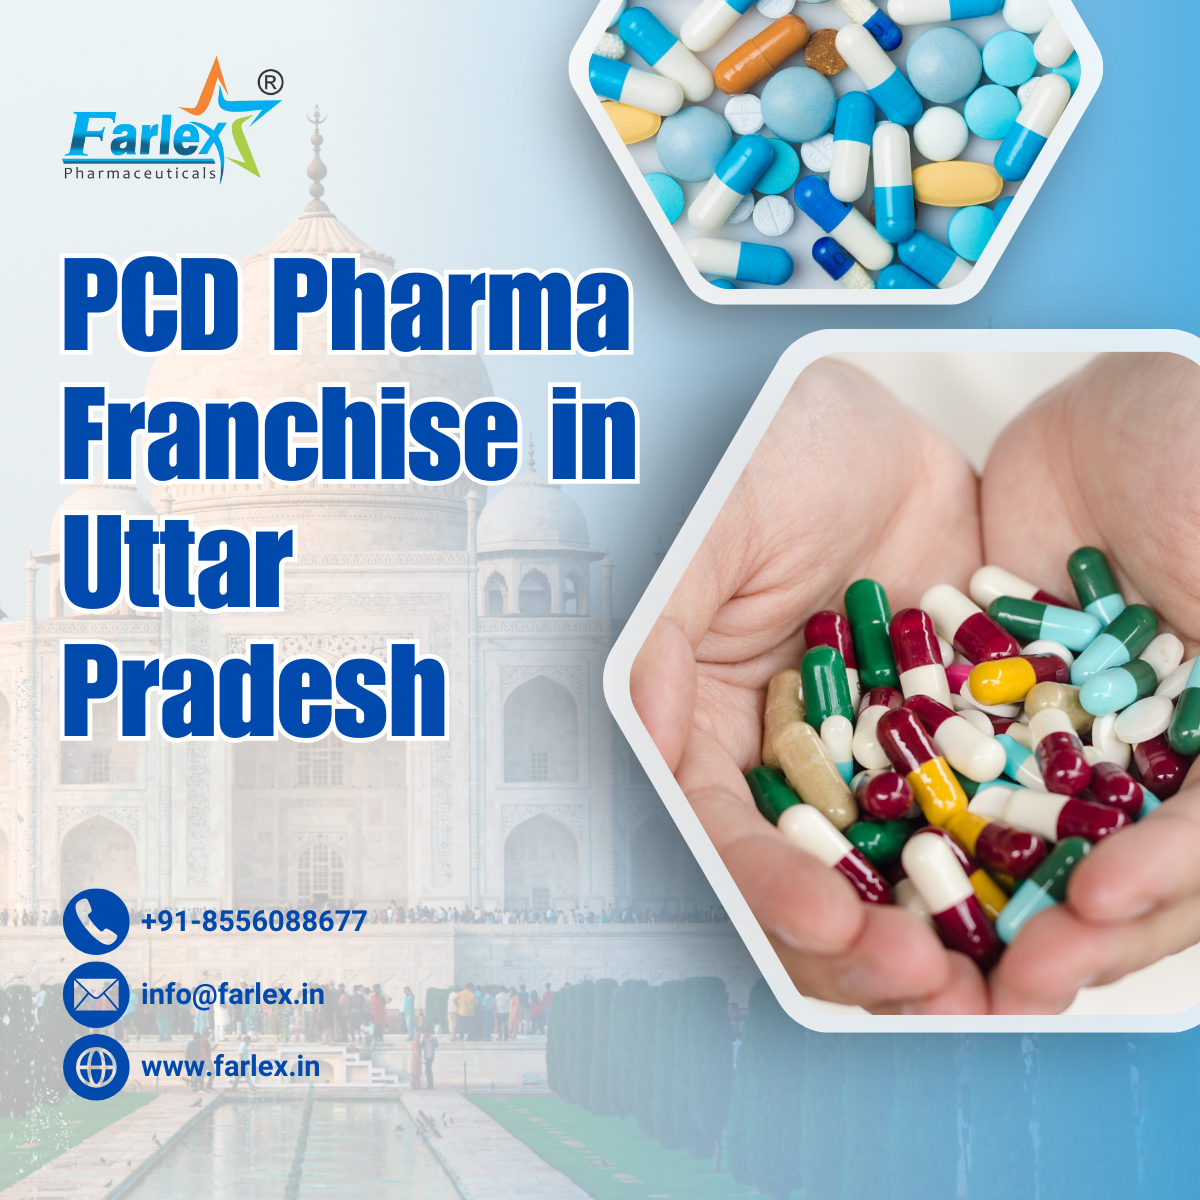 farlex|PCD Pharma Franchise in Uttar Pradesh 